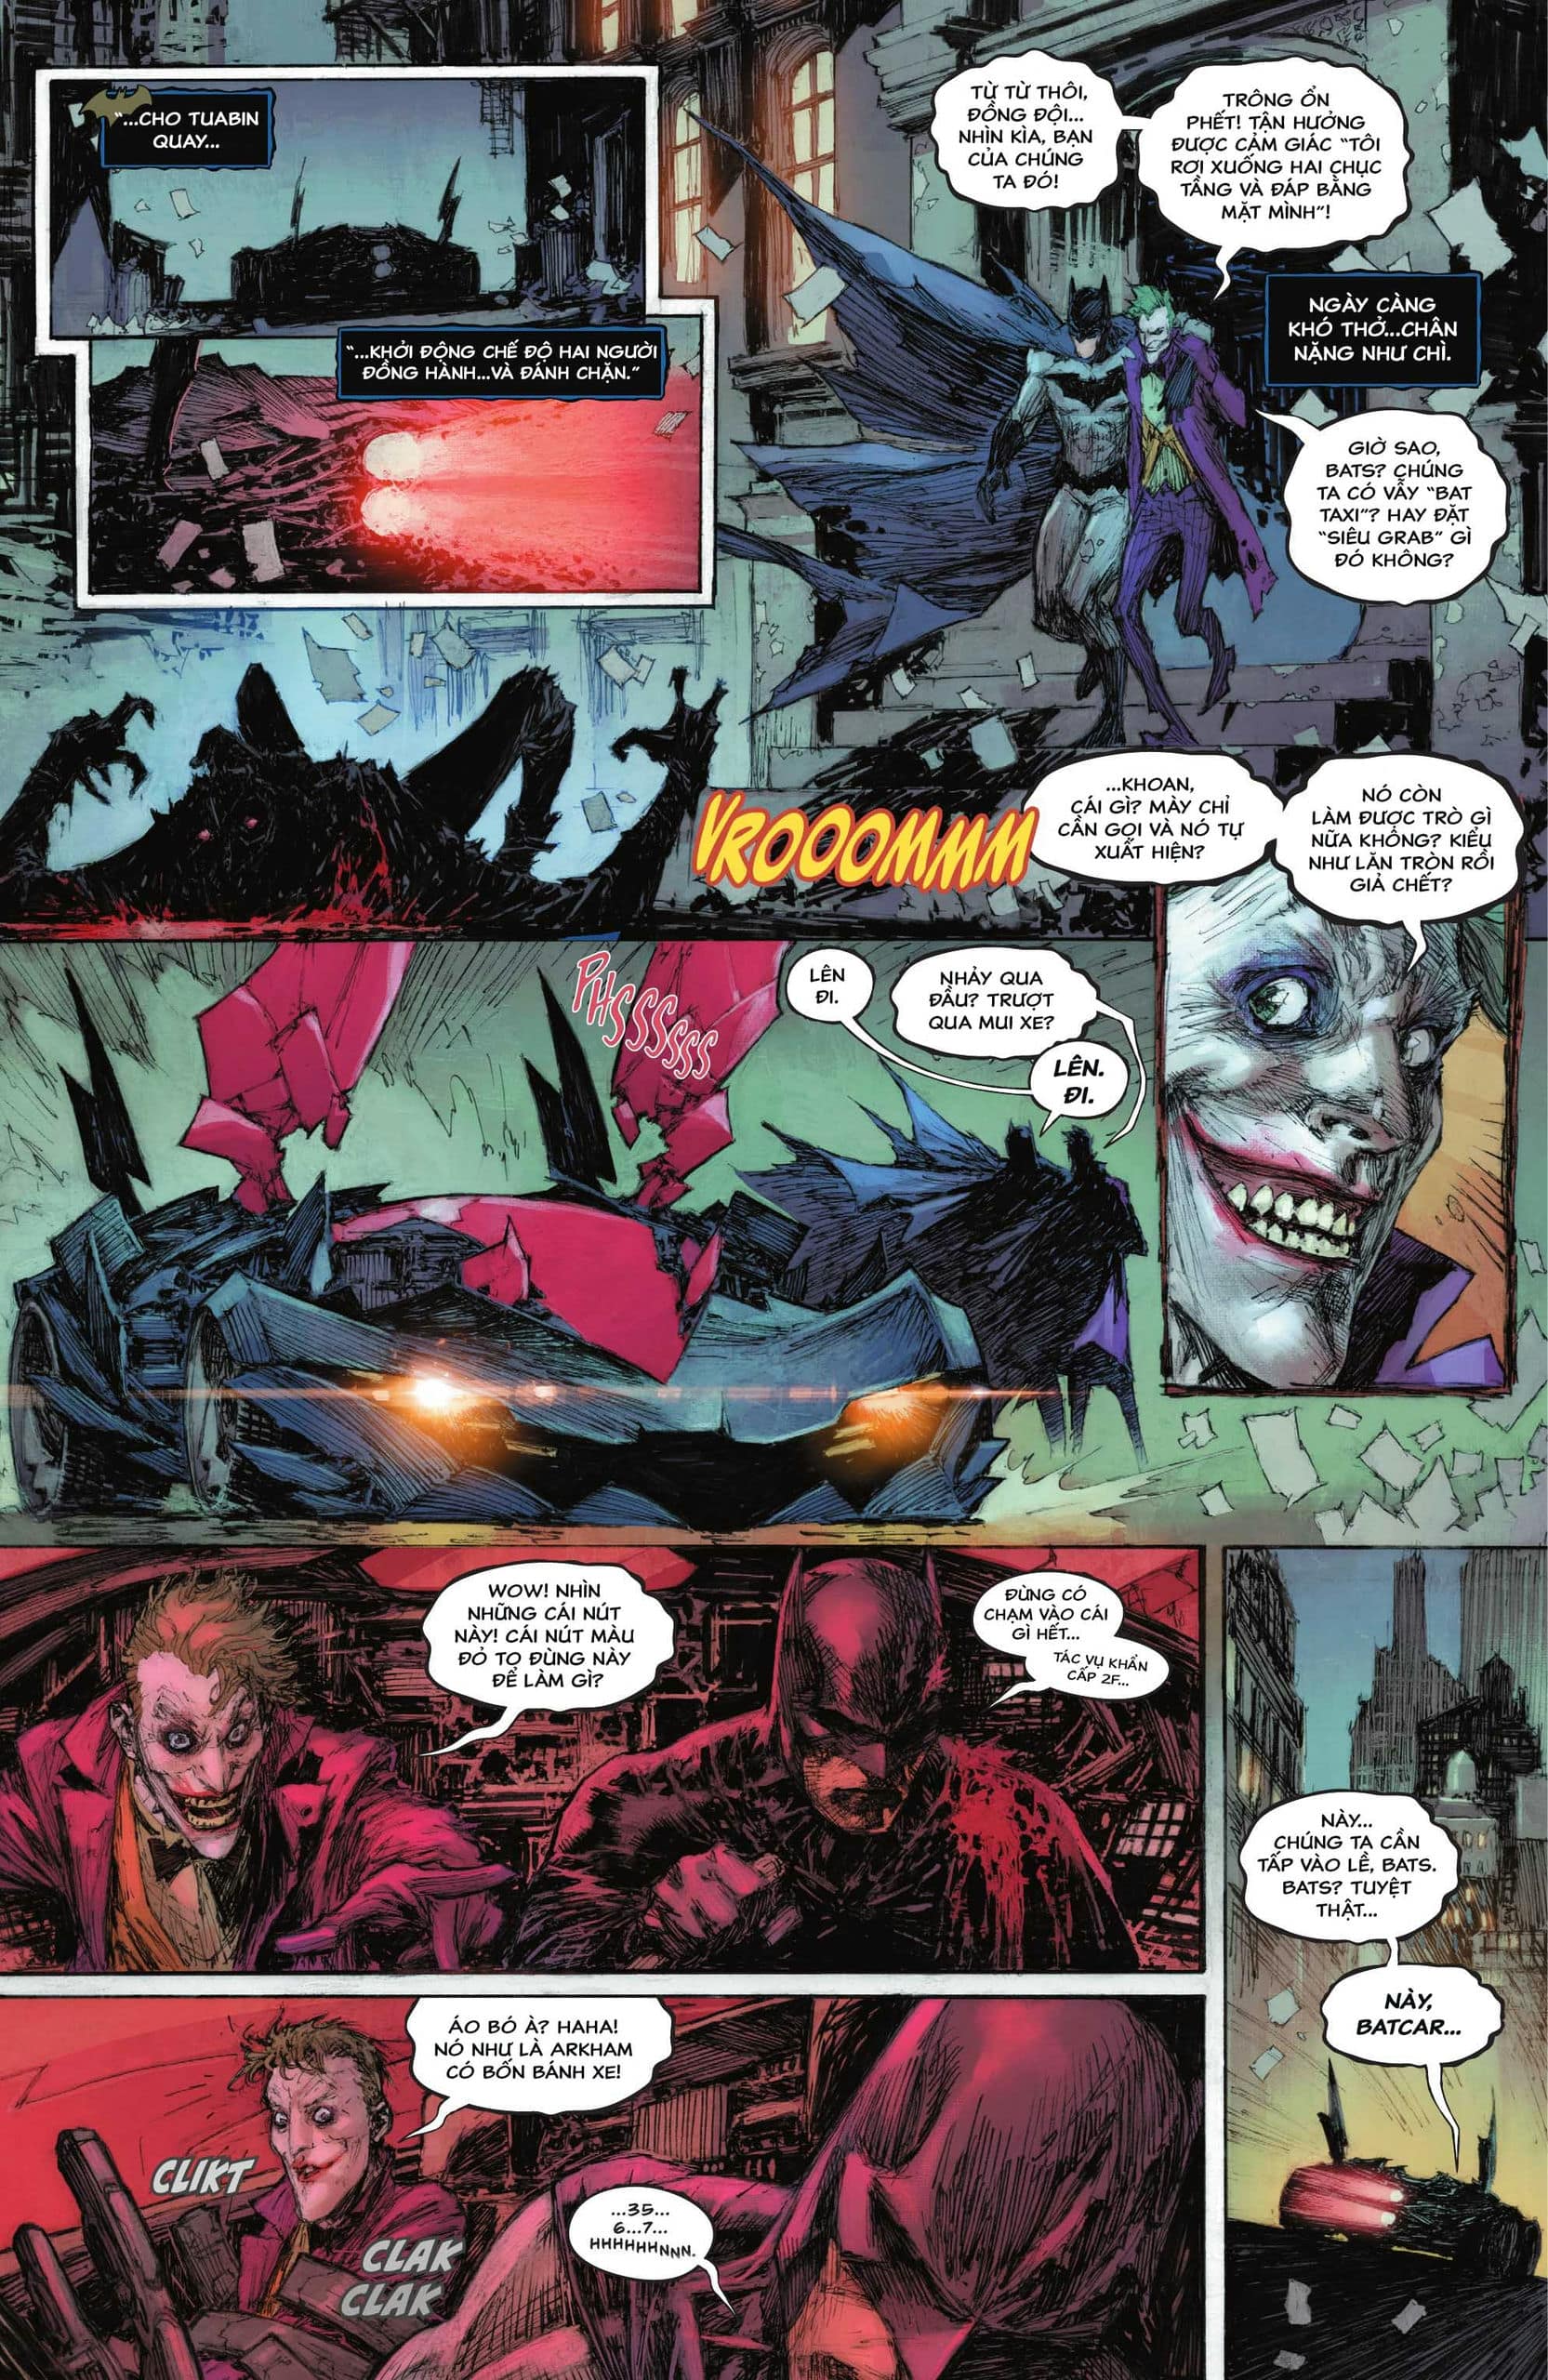 https://langgeek.net/wp-content/webpc-passthru.php?src=https://langgeek.net/wp-content/uploads/2022/12/Batman-The-Joker-The-Deadly-Duo-2022-002-012.jpg&nocache=1